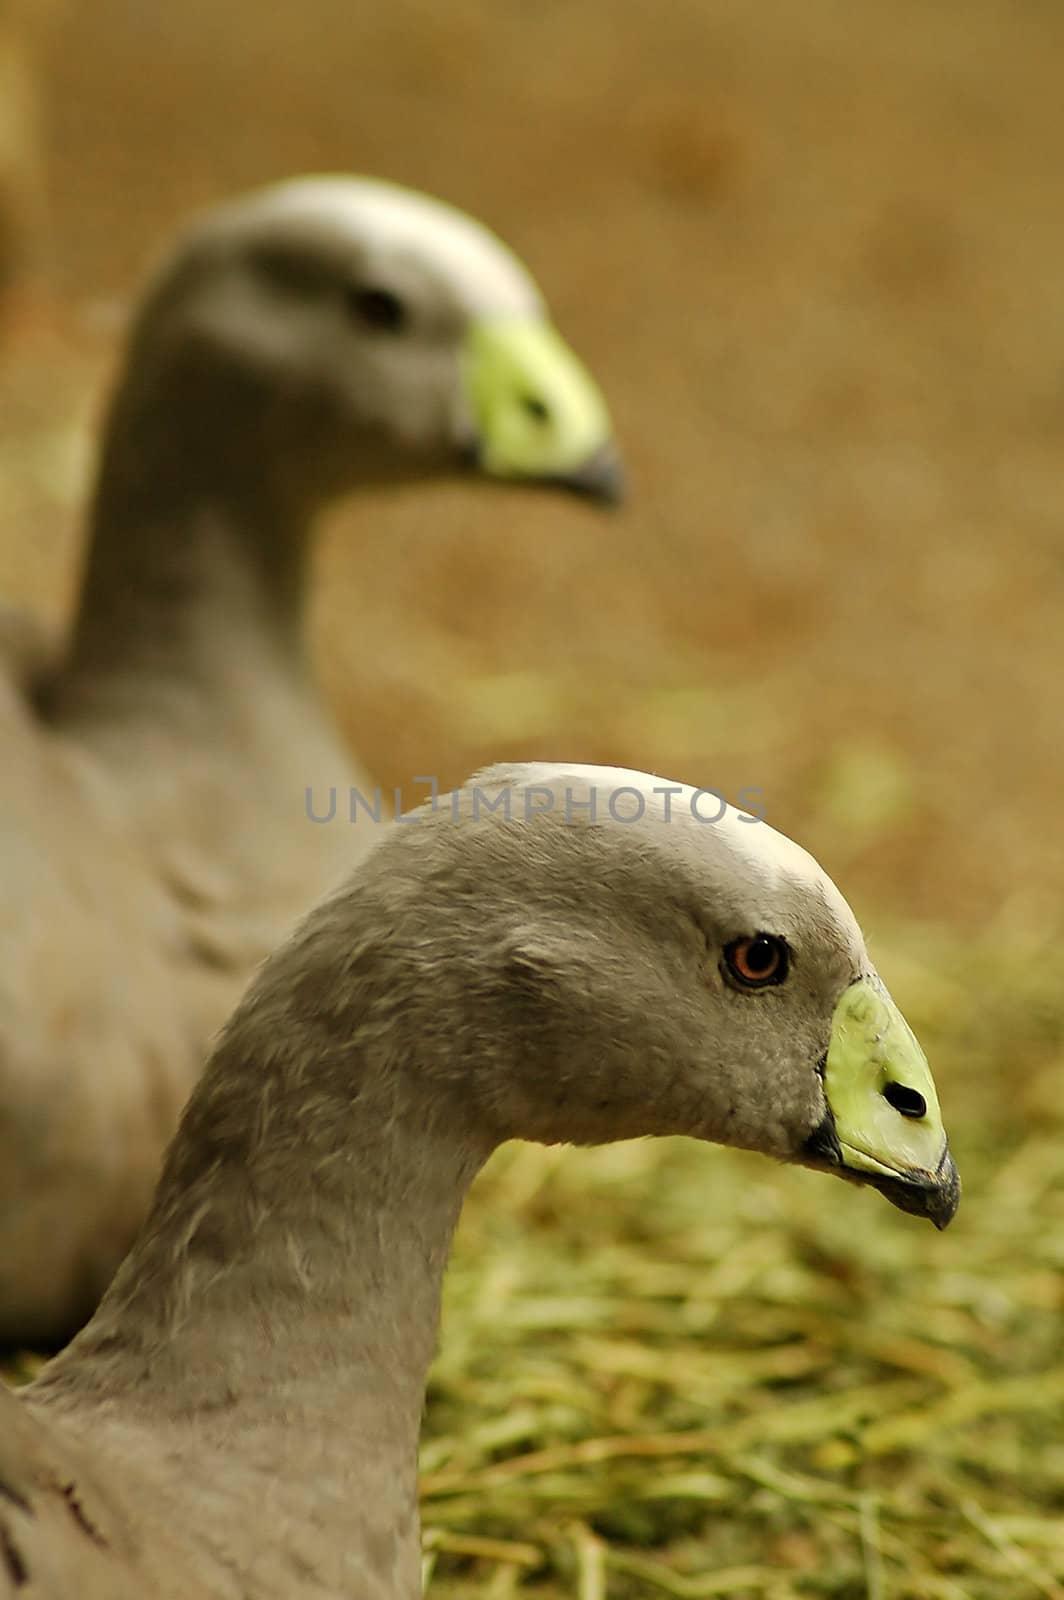 two grey birds with green beaks, photo taken in australian zoo